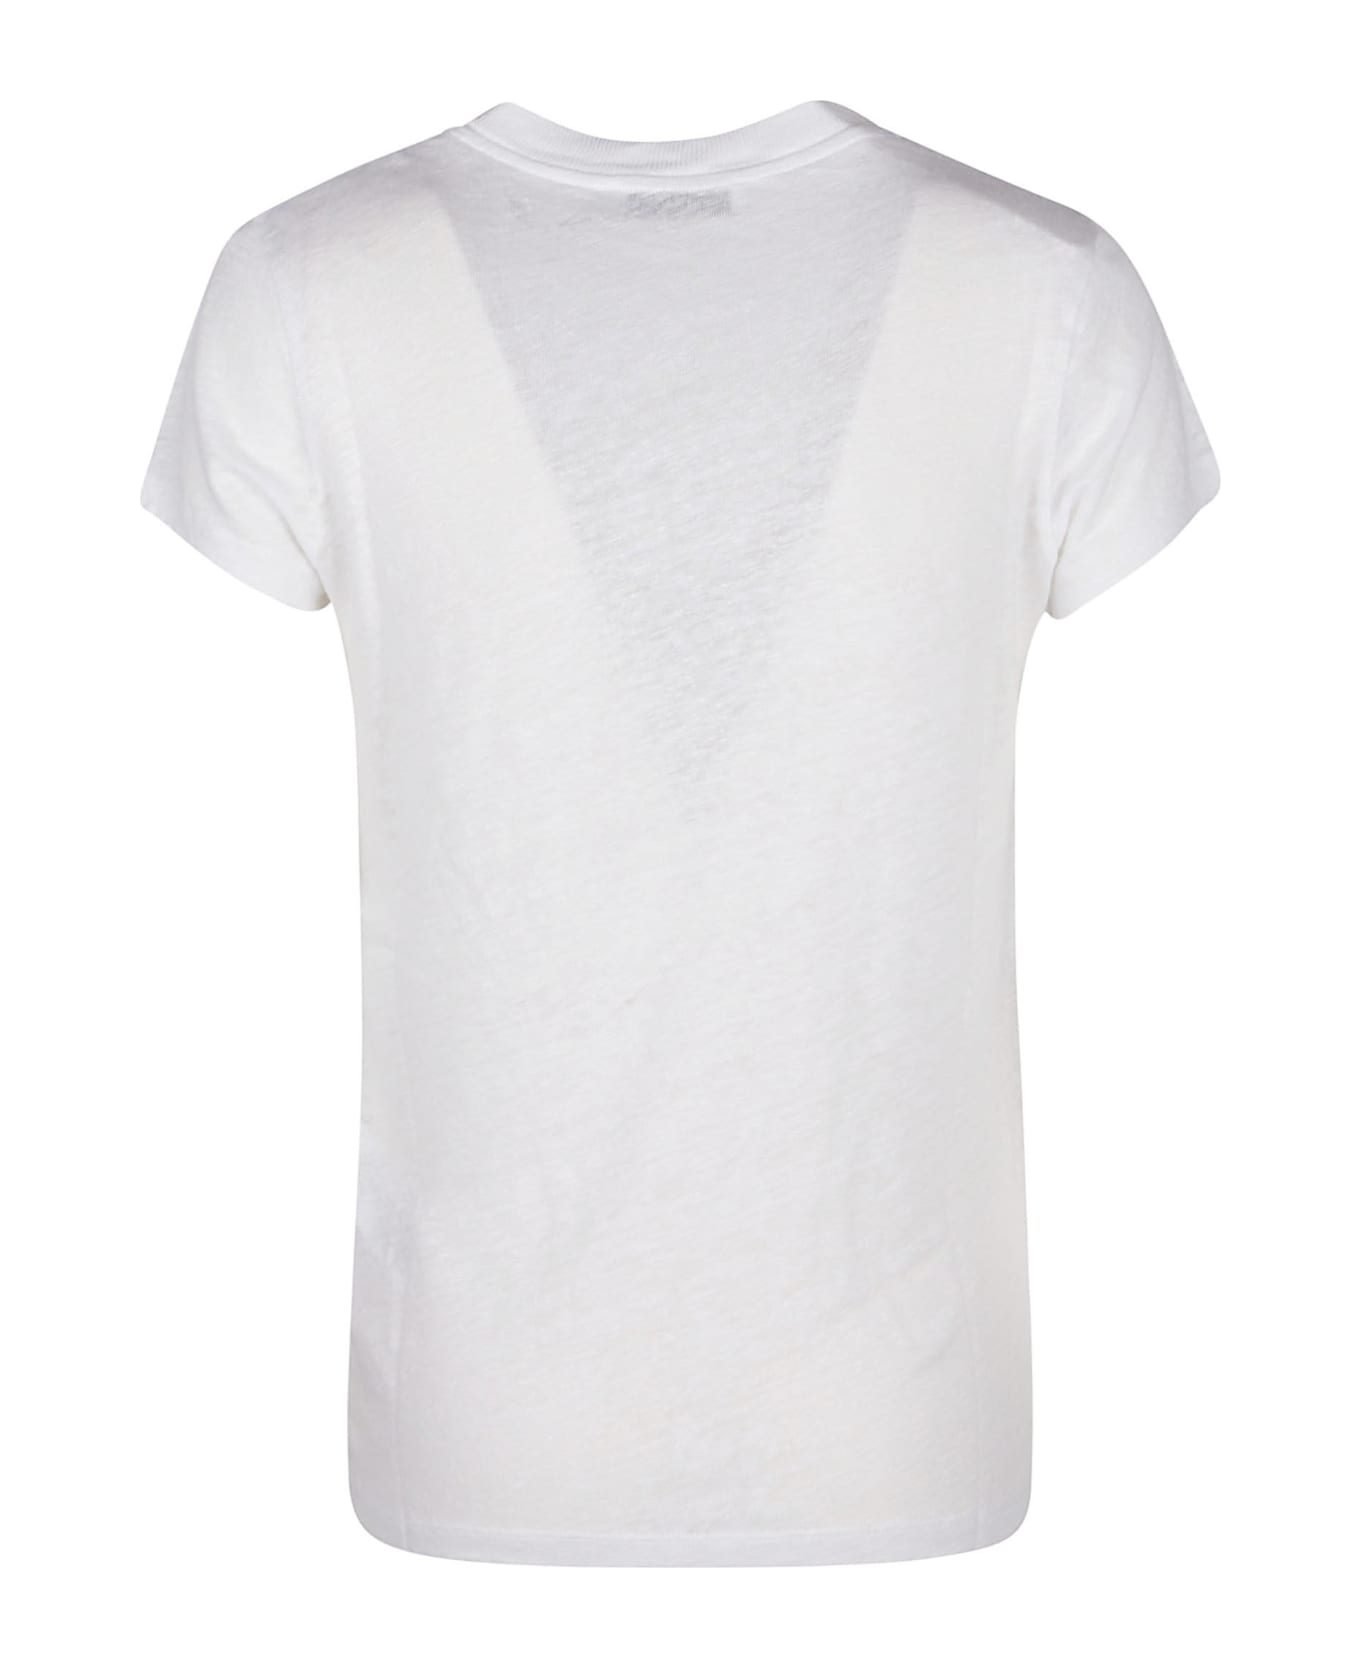 IRO Rodeo T-shirt - White